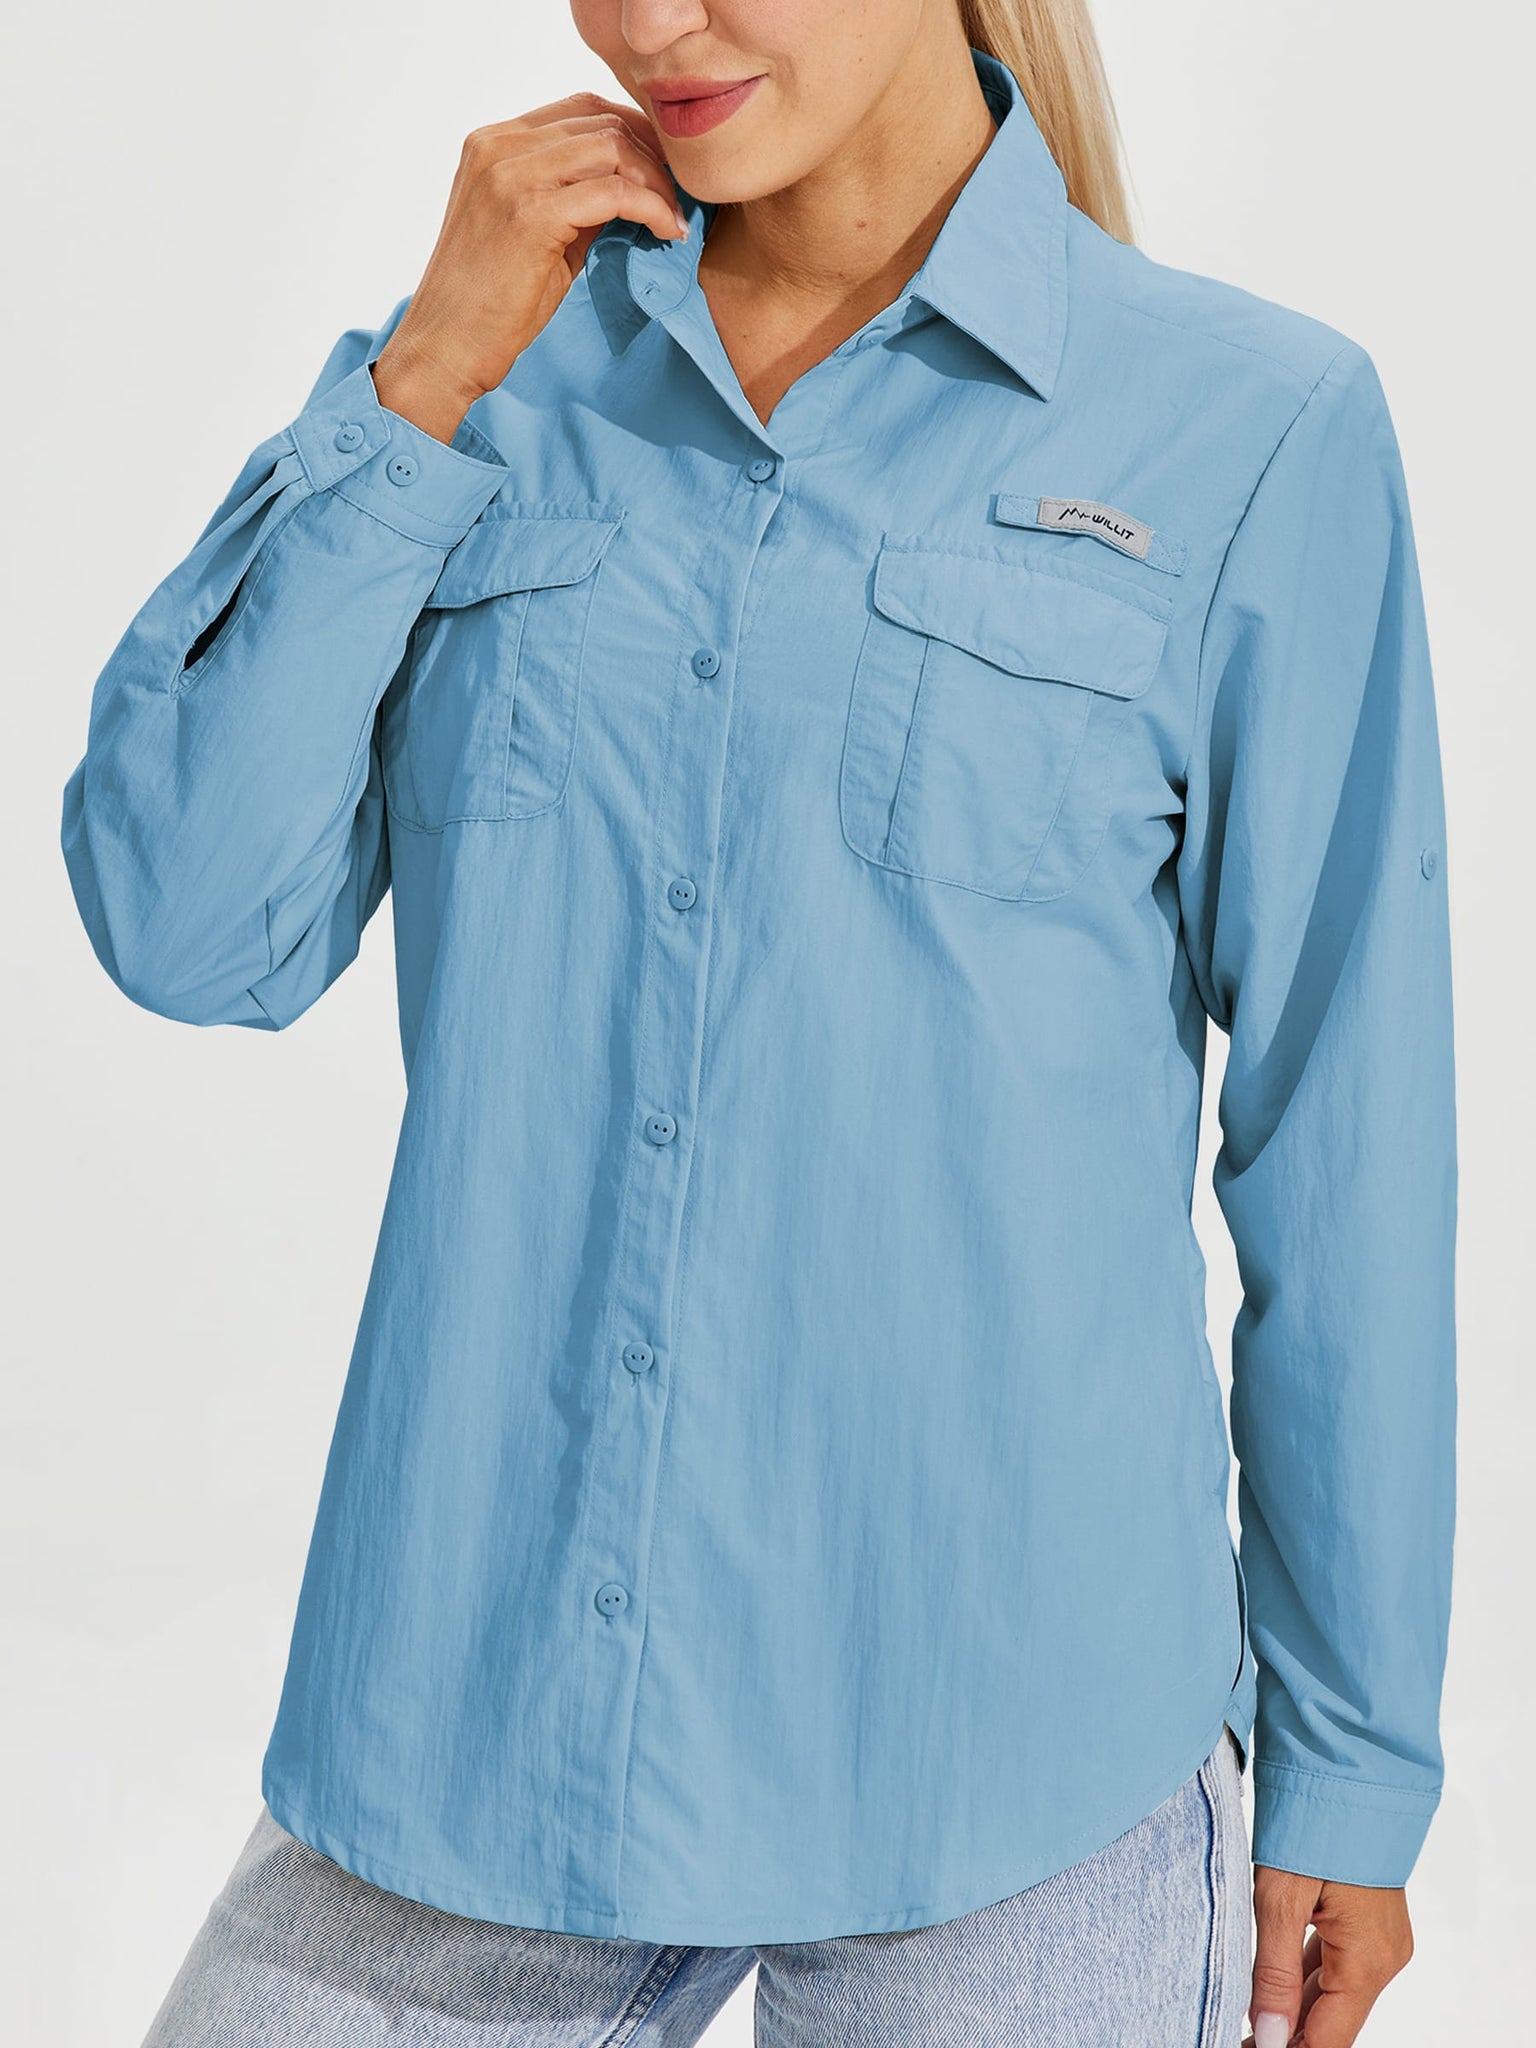 Women's Long Sleeve Fishing Shirt_Blue_model1